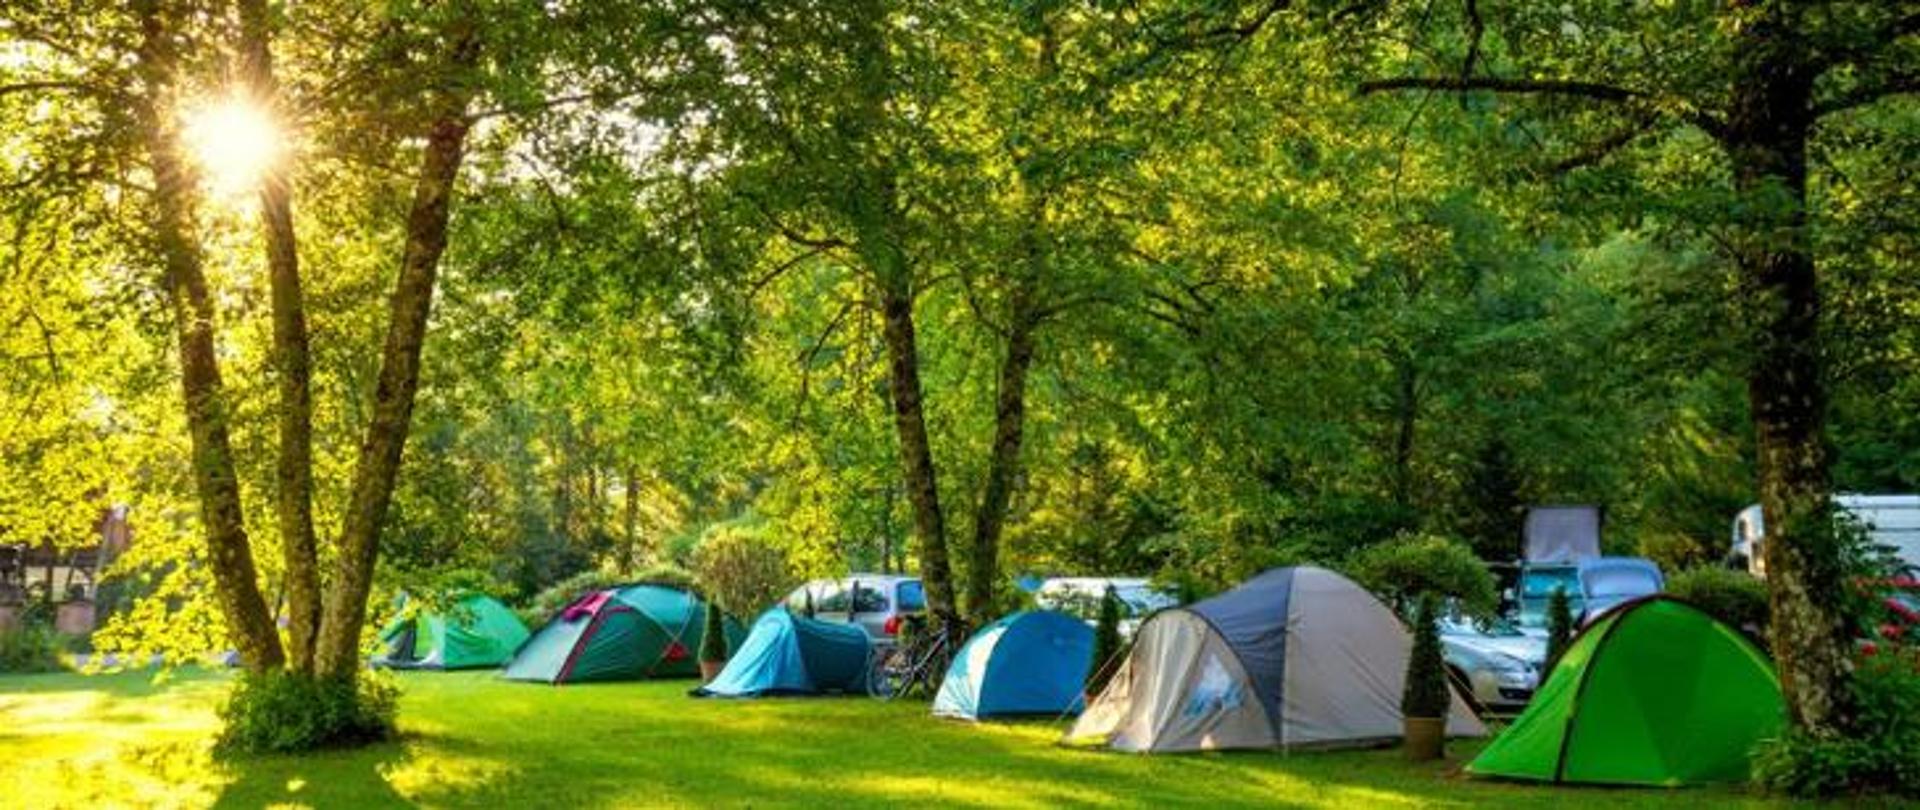 Obozowisko namiotów w lesie